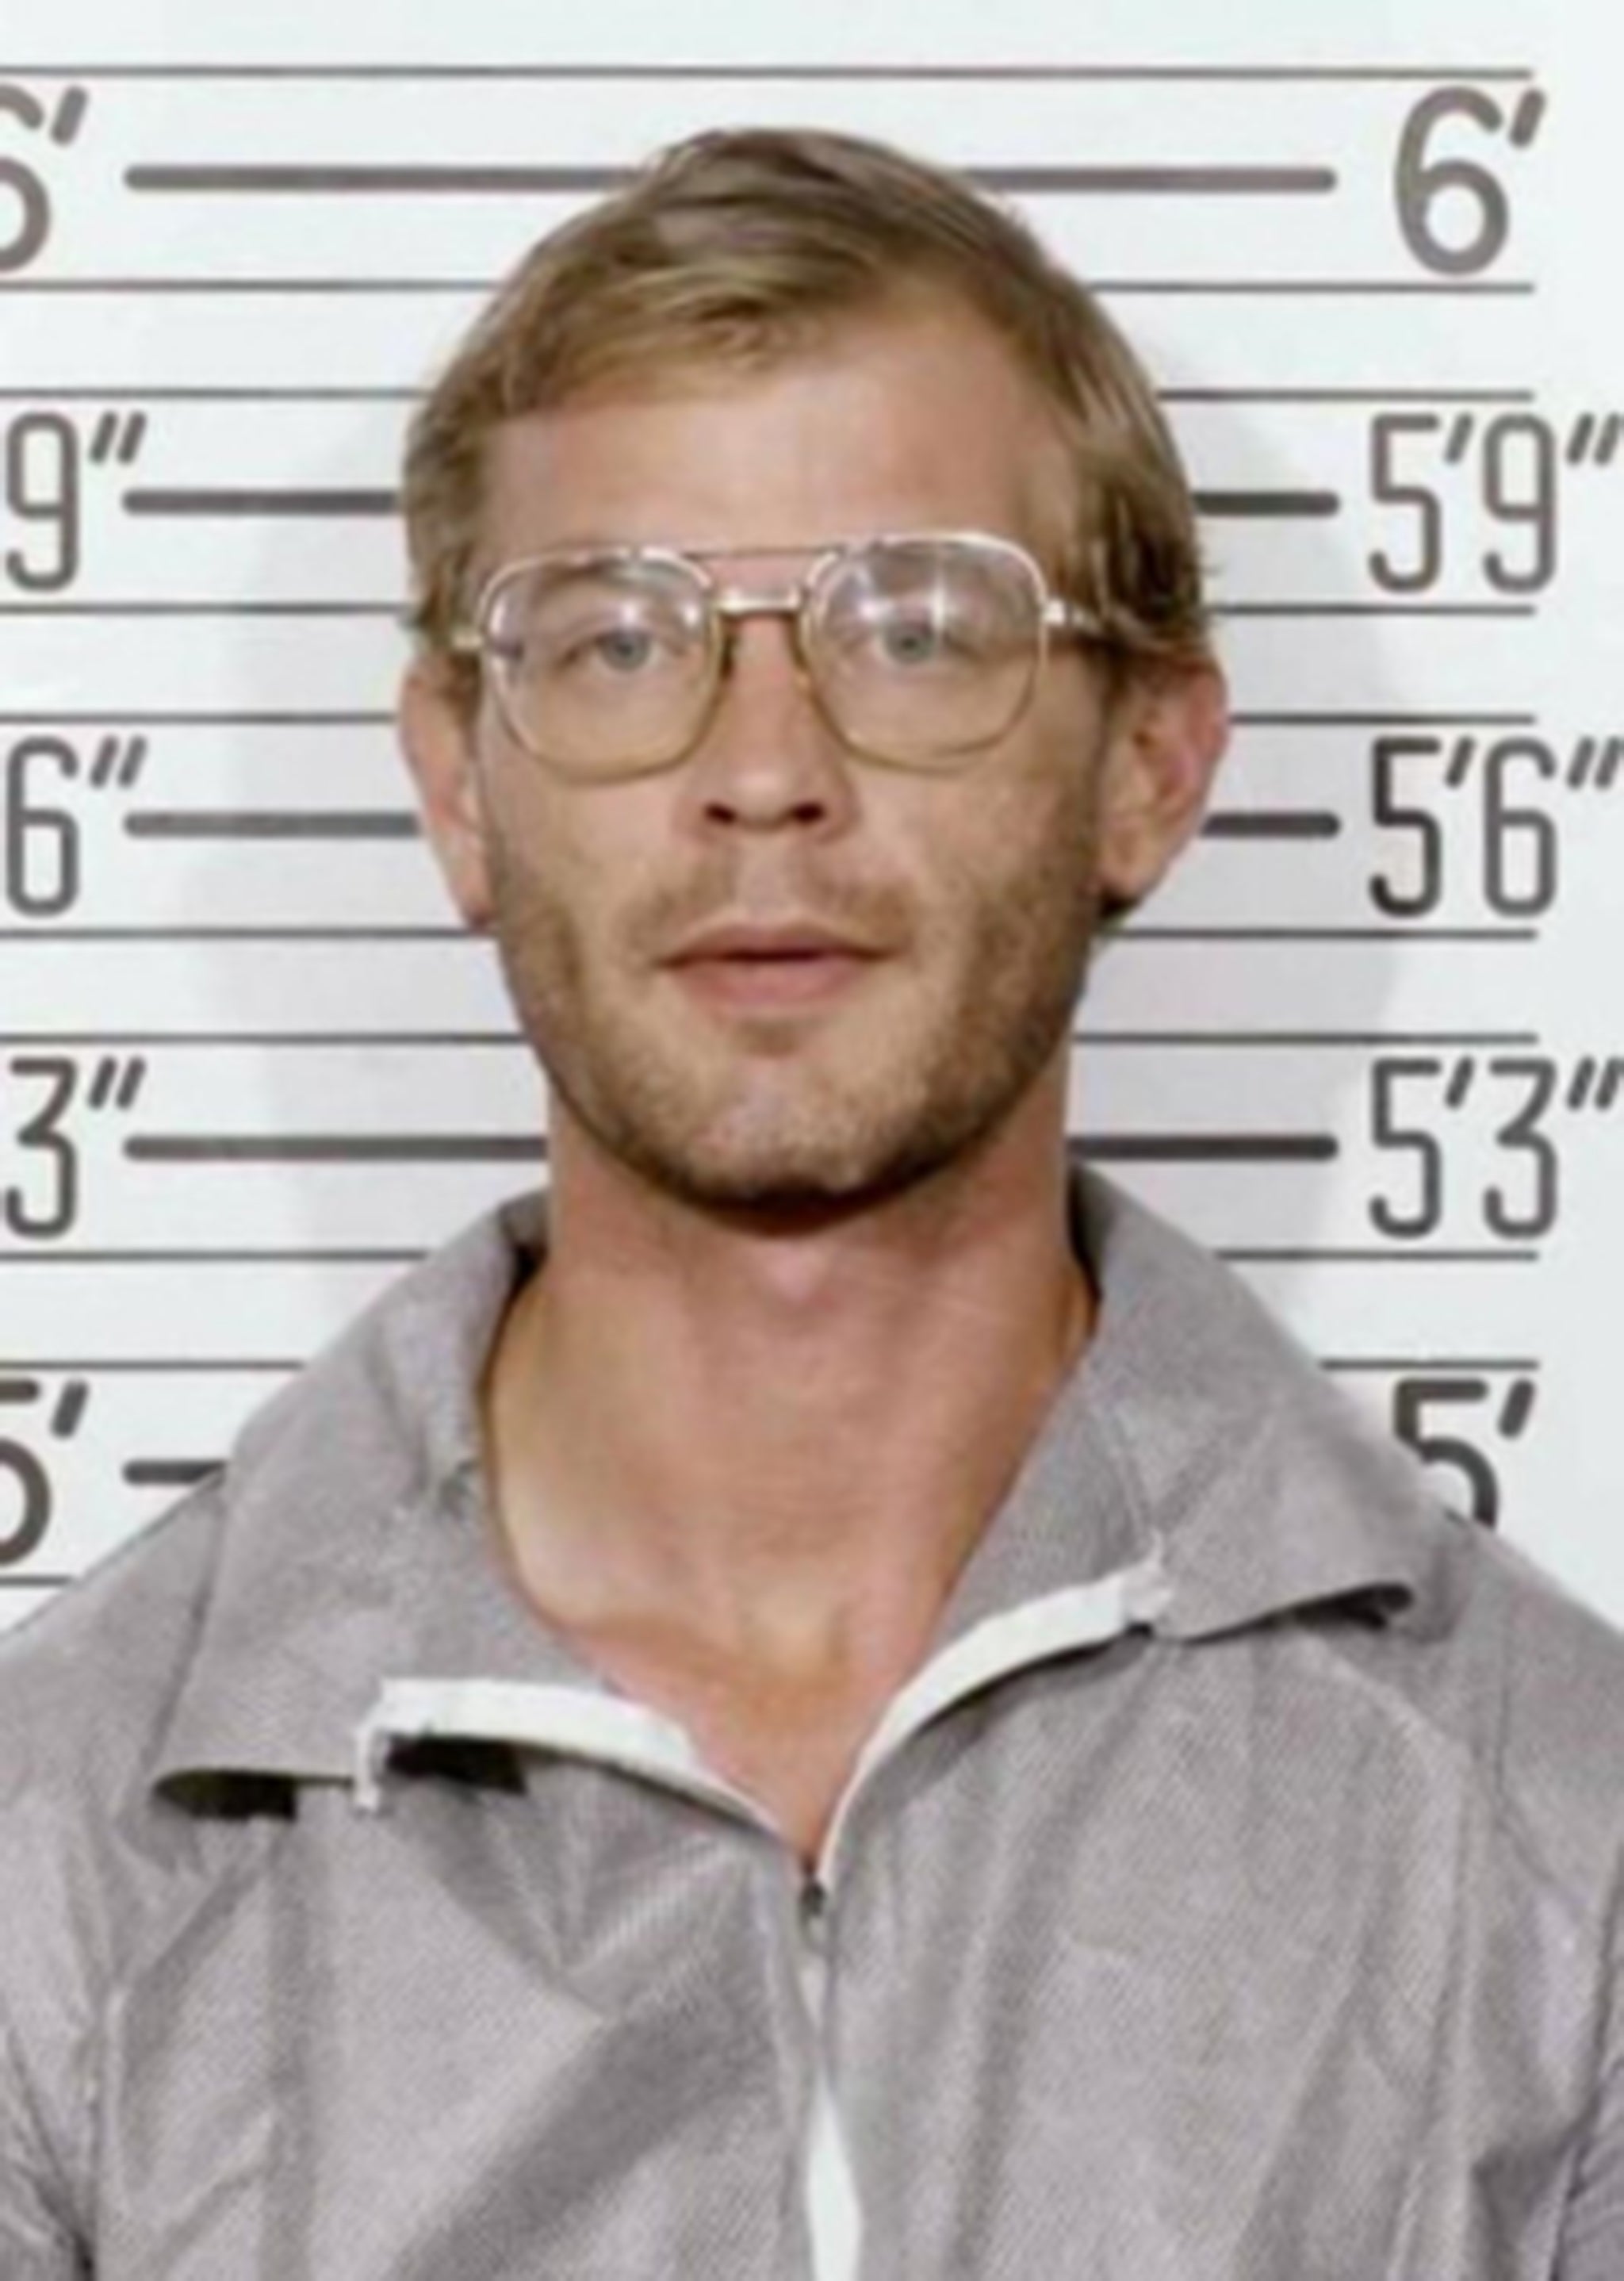 Foto policial de Jeffrey Dahmer luego de su arresto en 1991